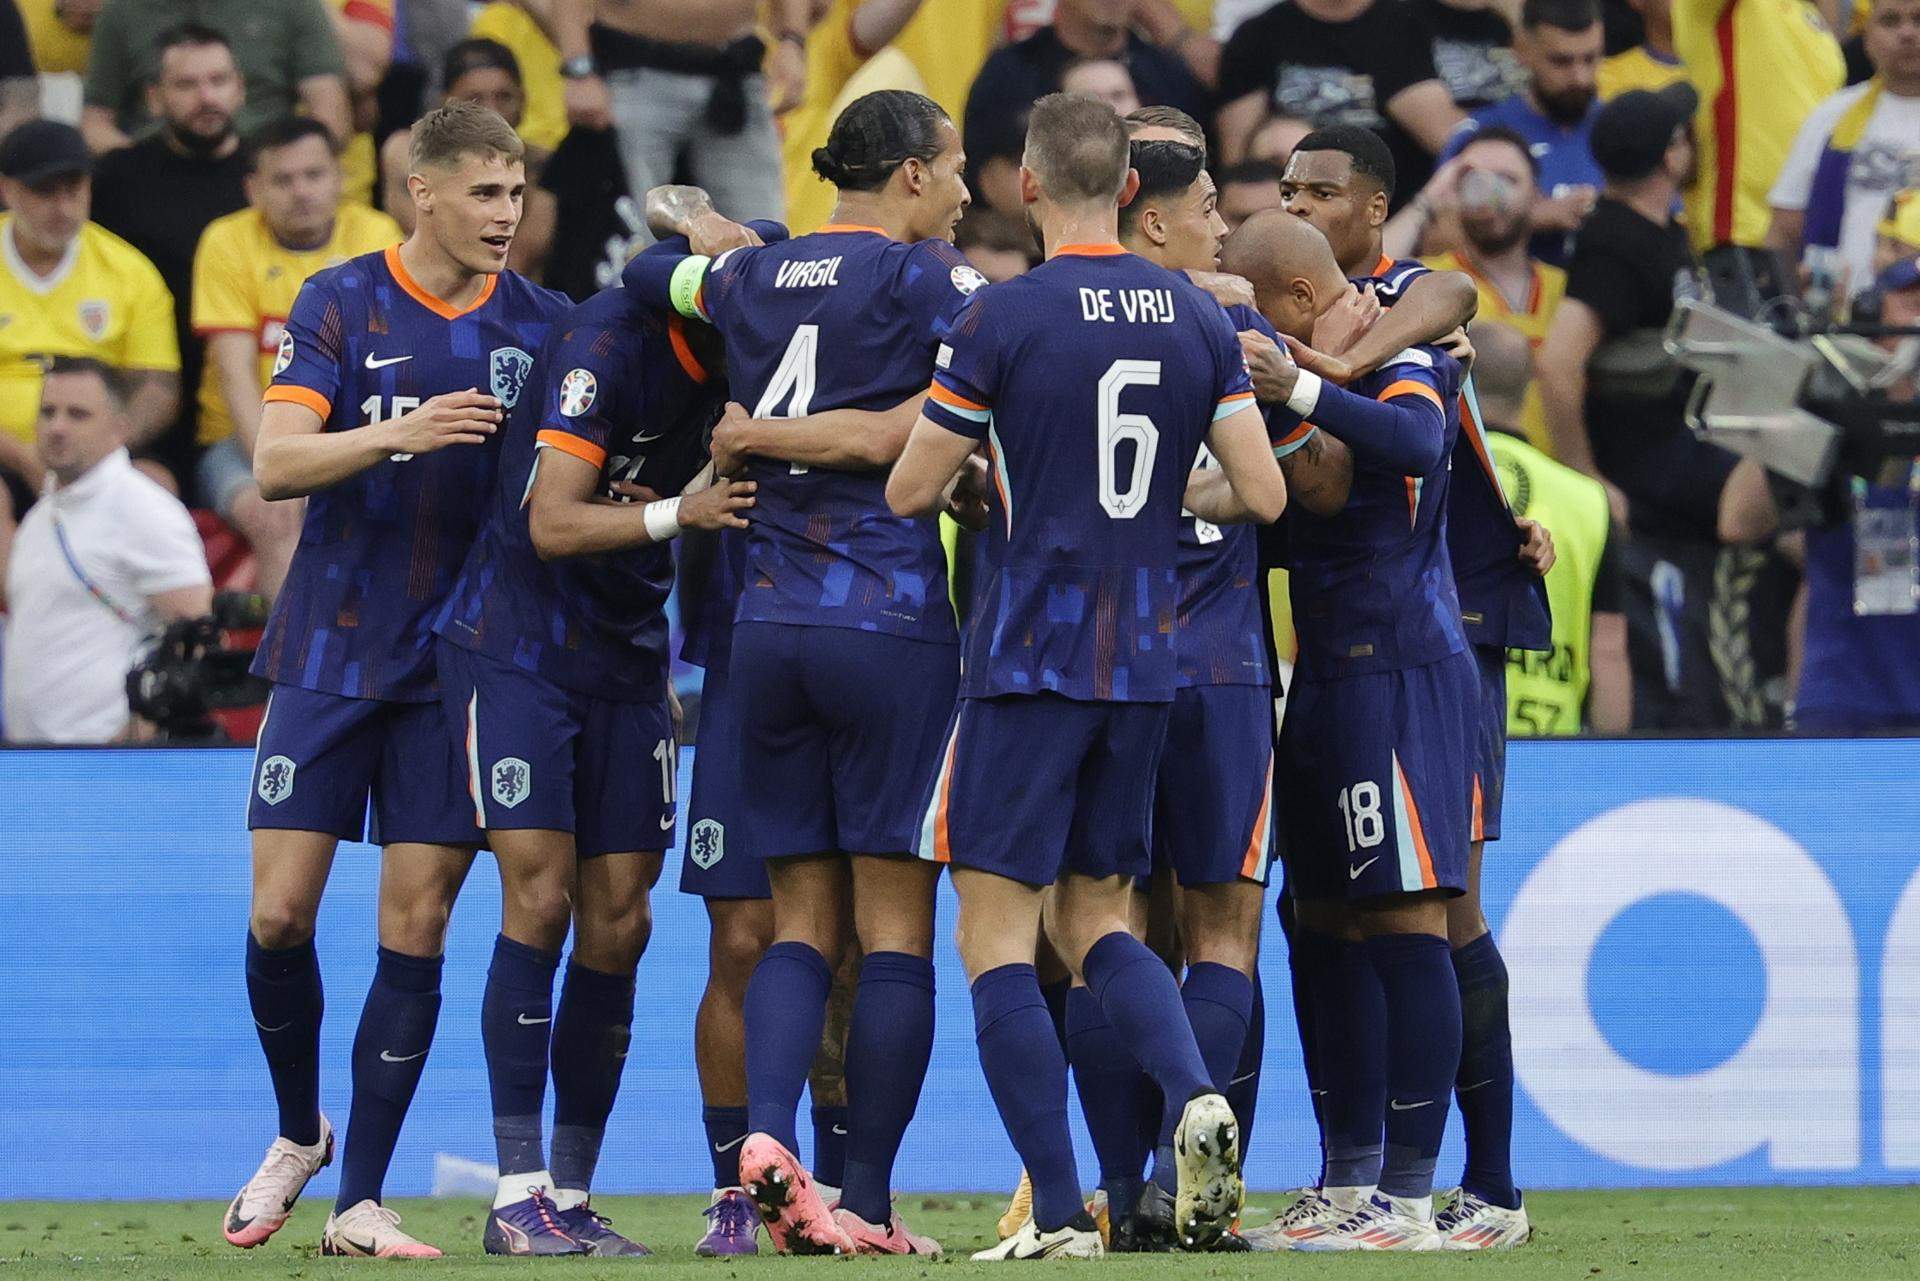 Países Bajos golea a Rumanía y completa su mejor partido de la Eurocopa (0-3)